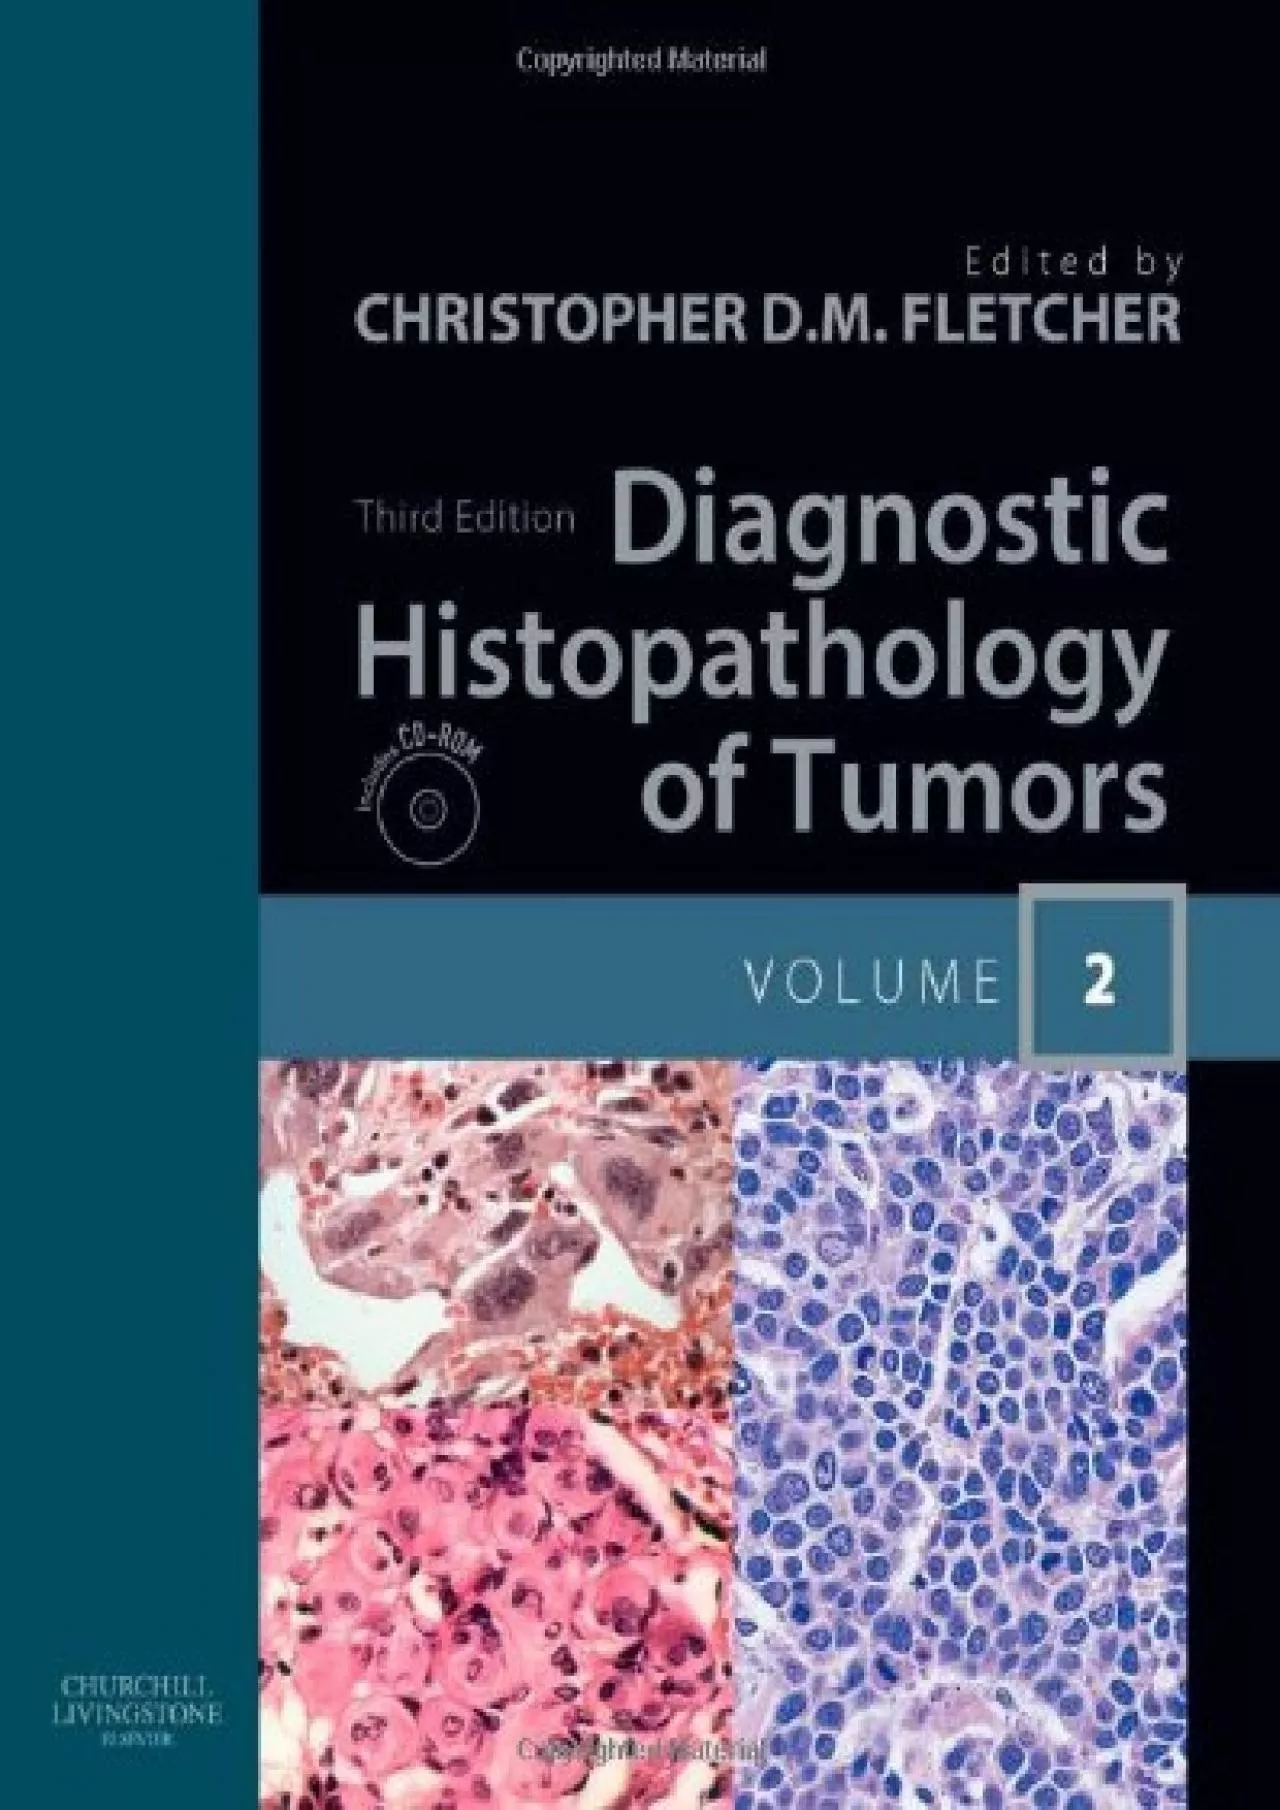 (EBOOK)-Diagnostic Histopathology of Tumors: 2-Volume Set with CD-ROMs (DIAGNOSTIC HISTOPATHOLOGY